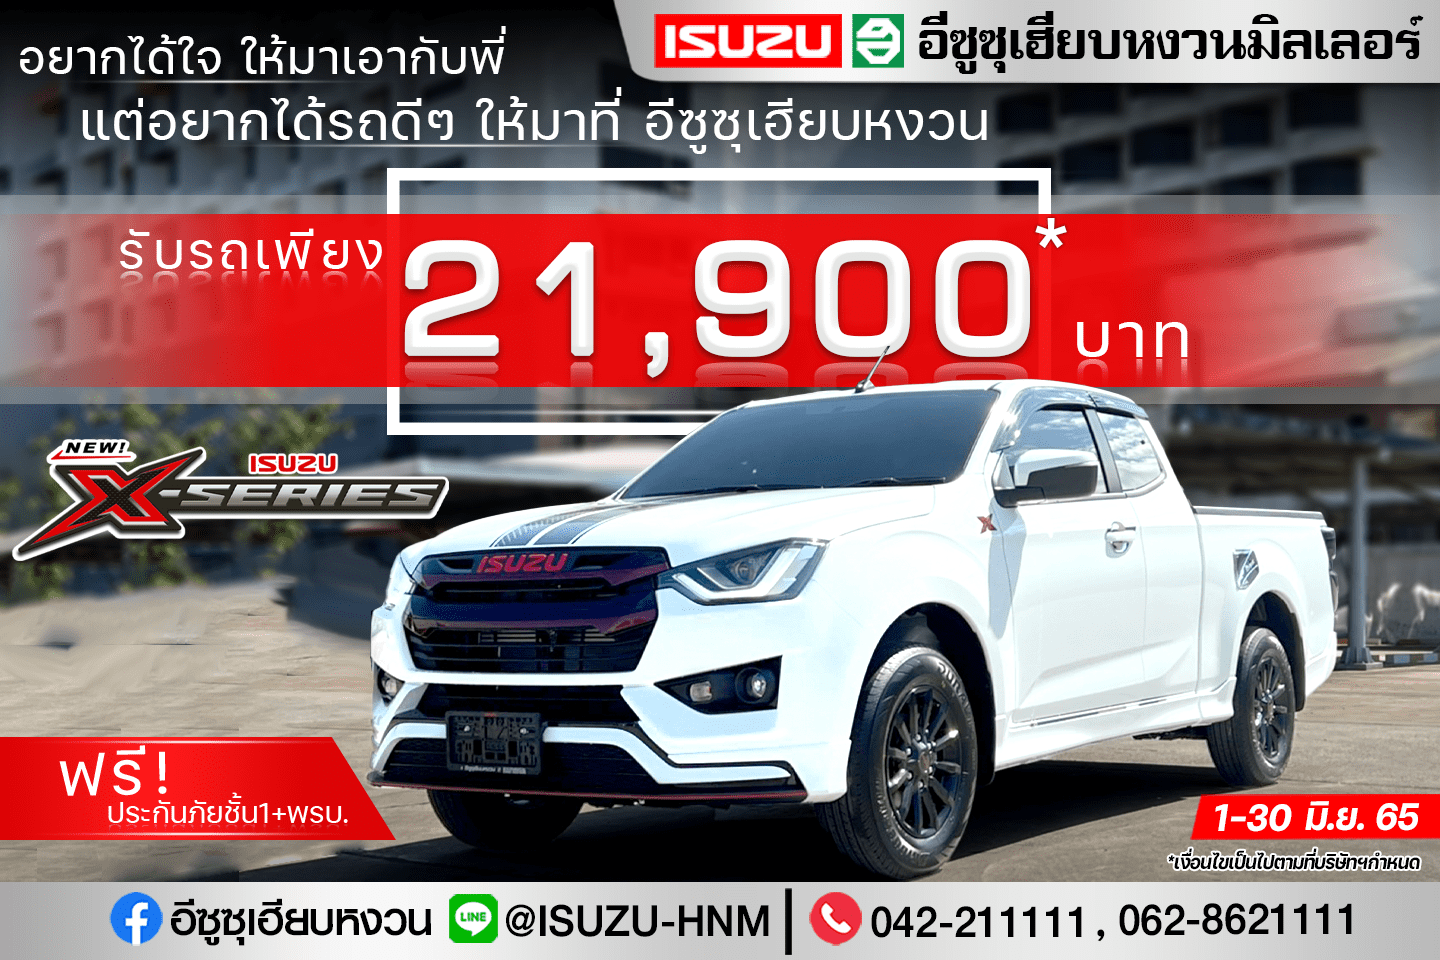 NEW ISUZU X-SERIES รับรถเพียง 21,900 บาท 